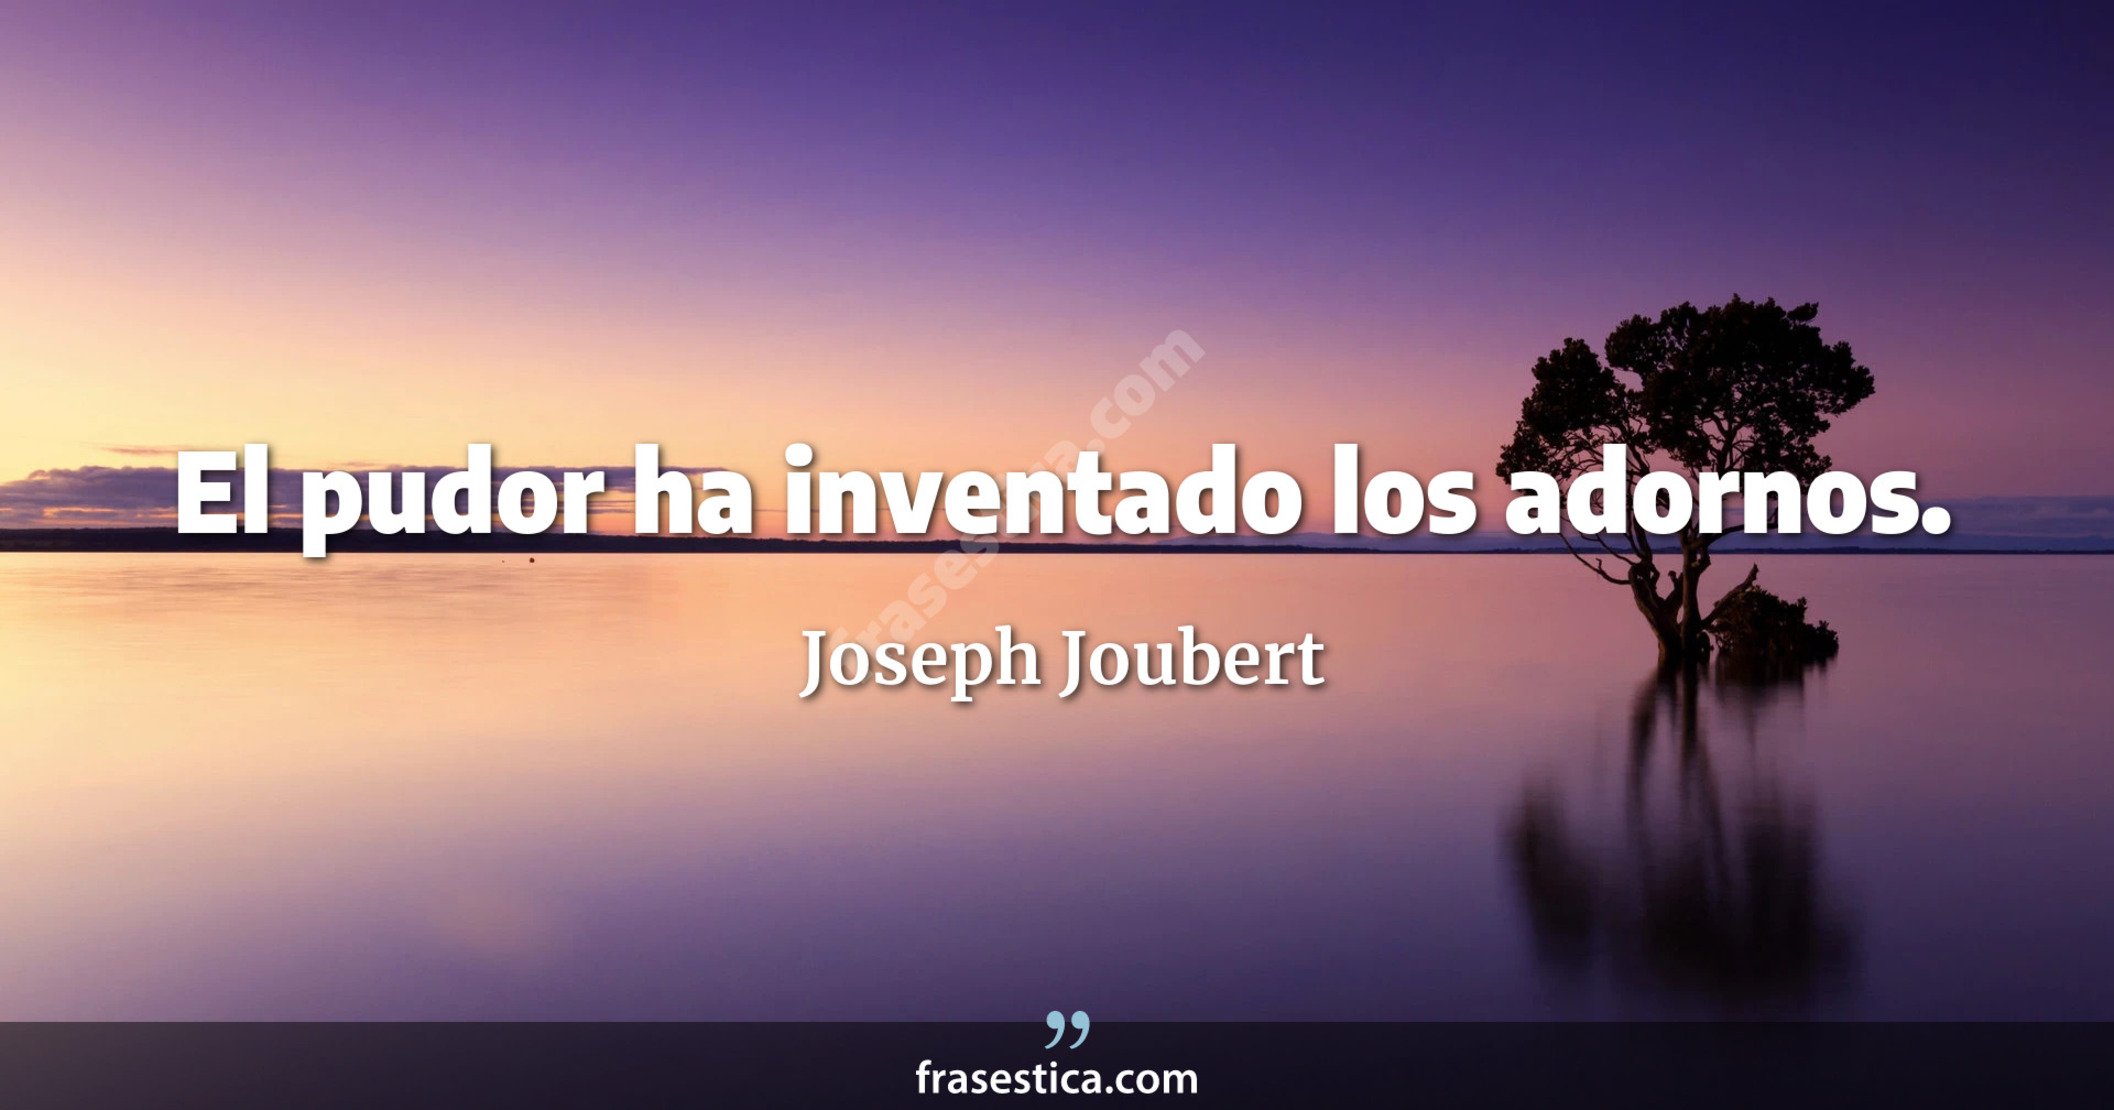 El pudor ha inventado los adornos. - Joseph Joubert